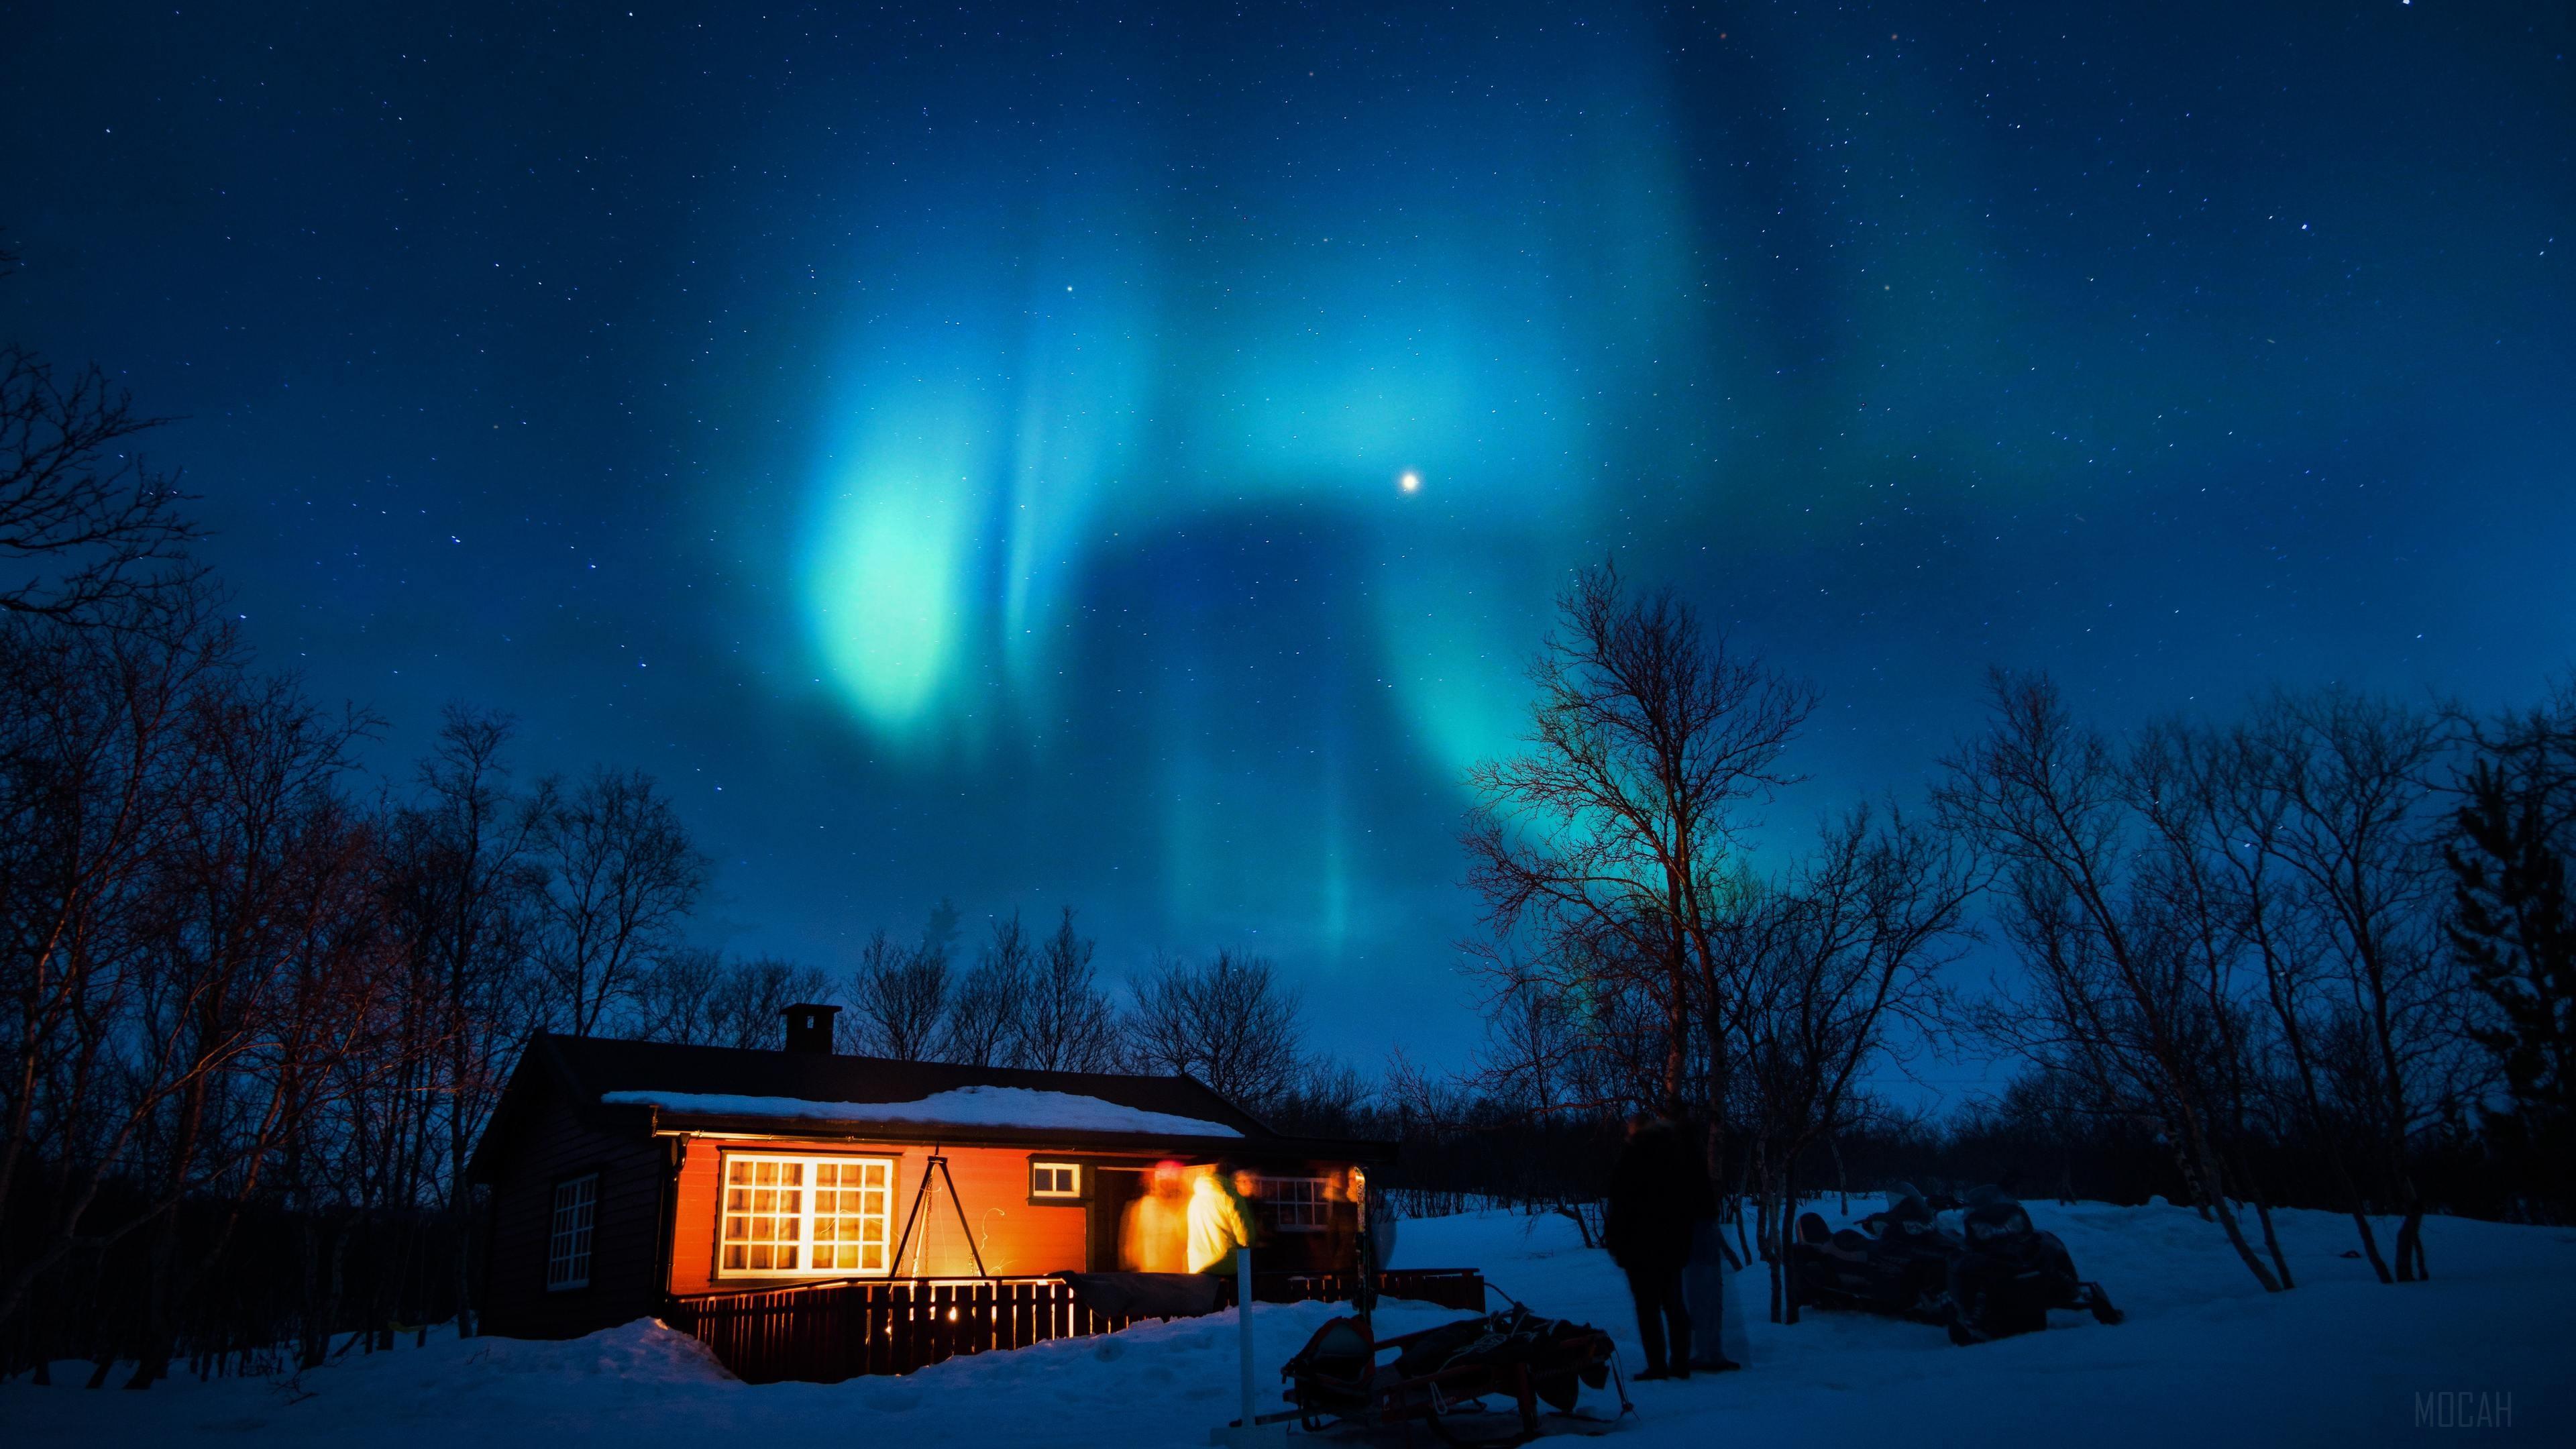 HD wallpaper, House Under Aurora Northern Lights 4K